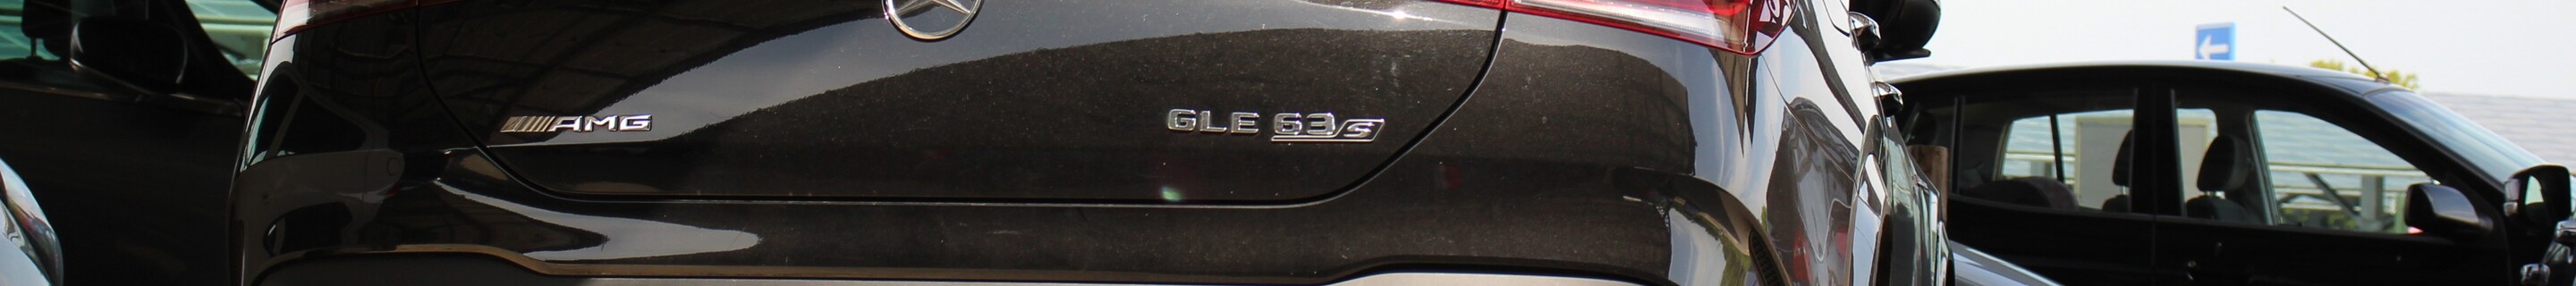 Mercedes-AMG GLE 63 S Coupé C167